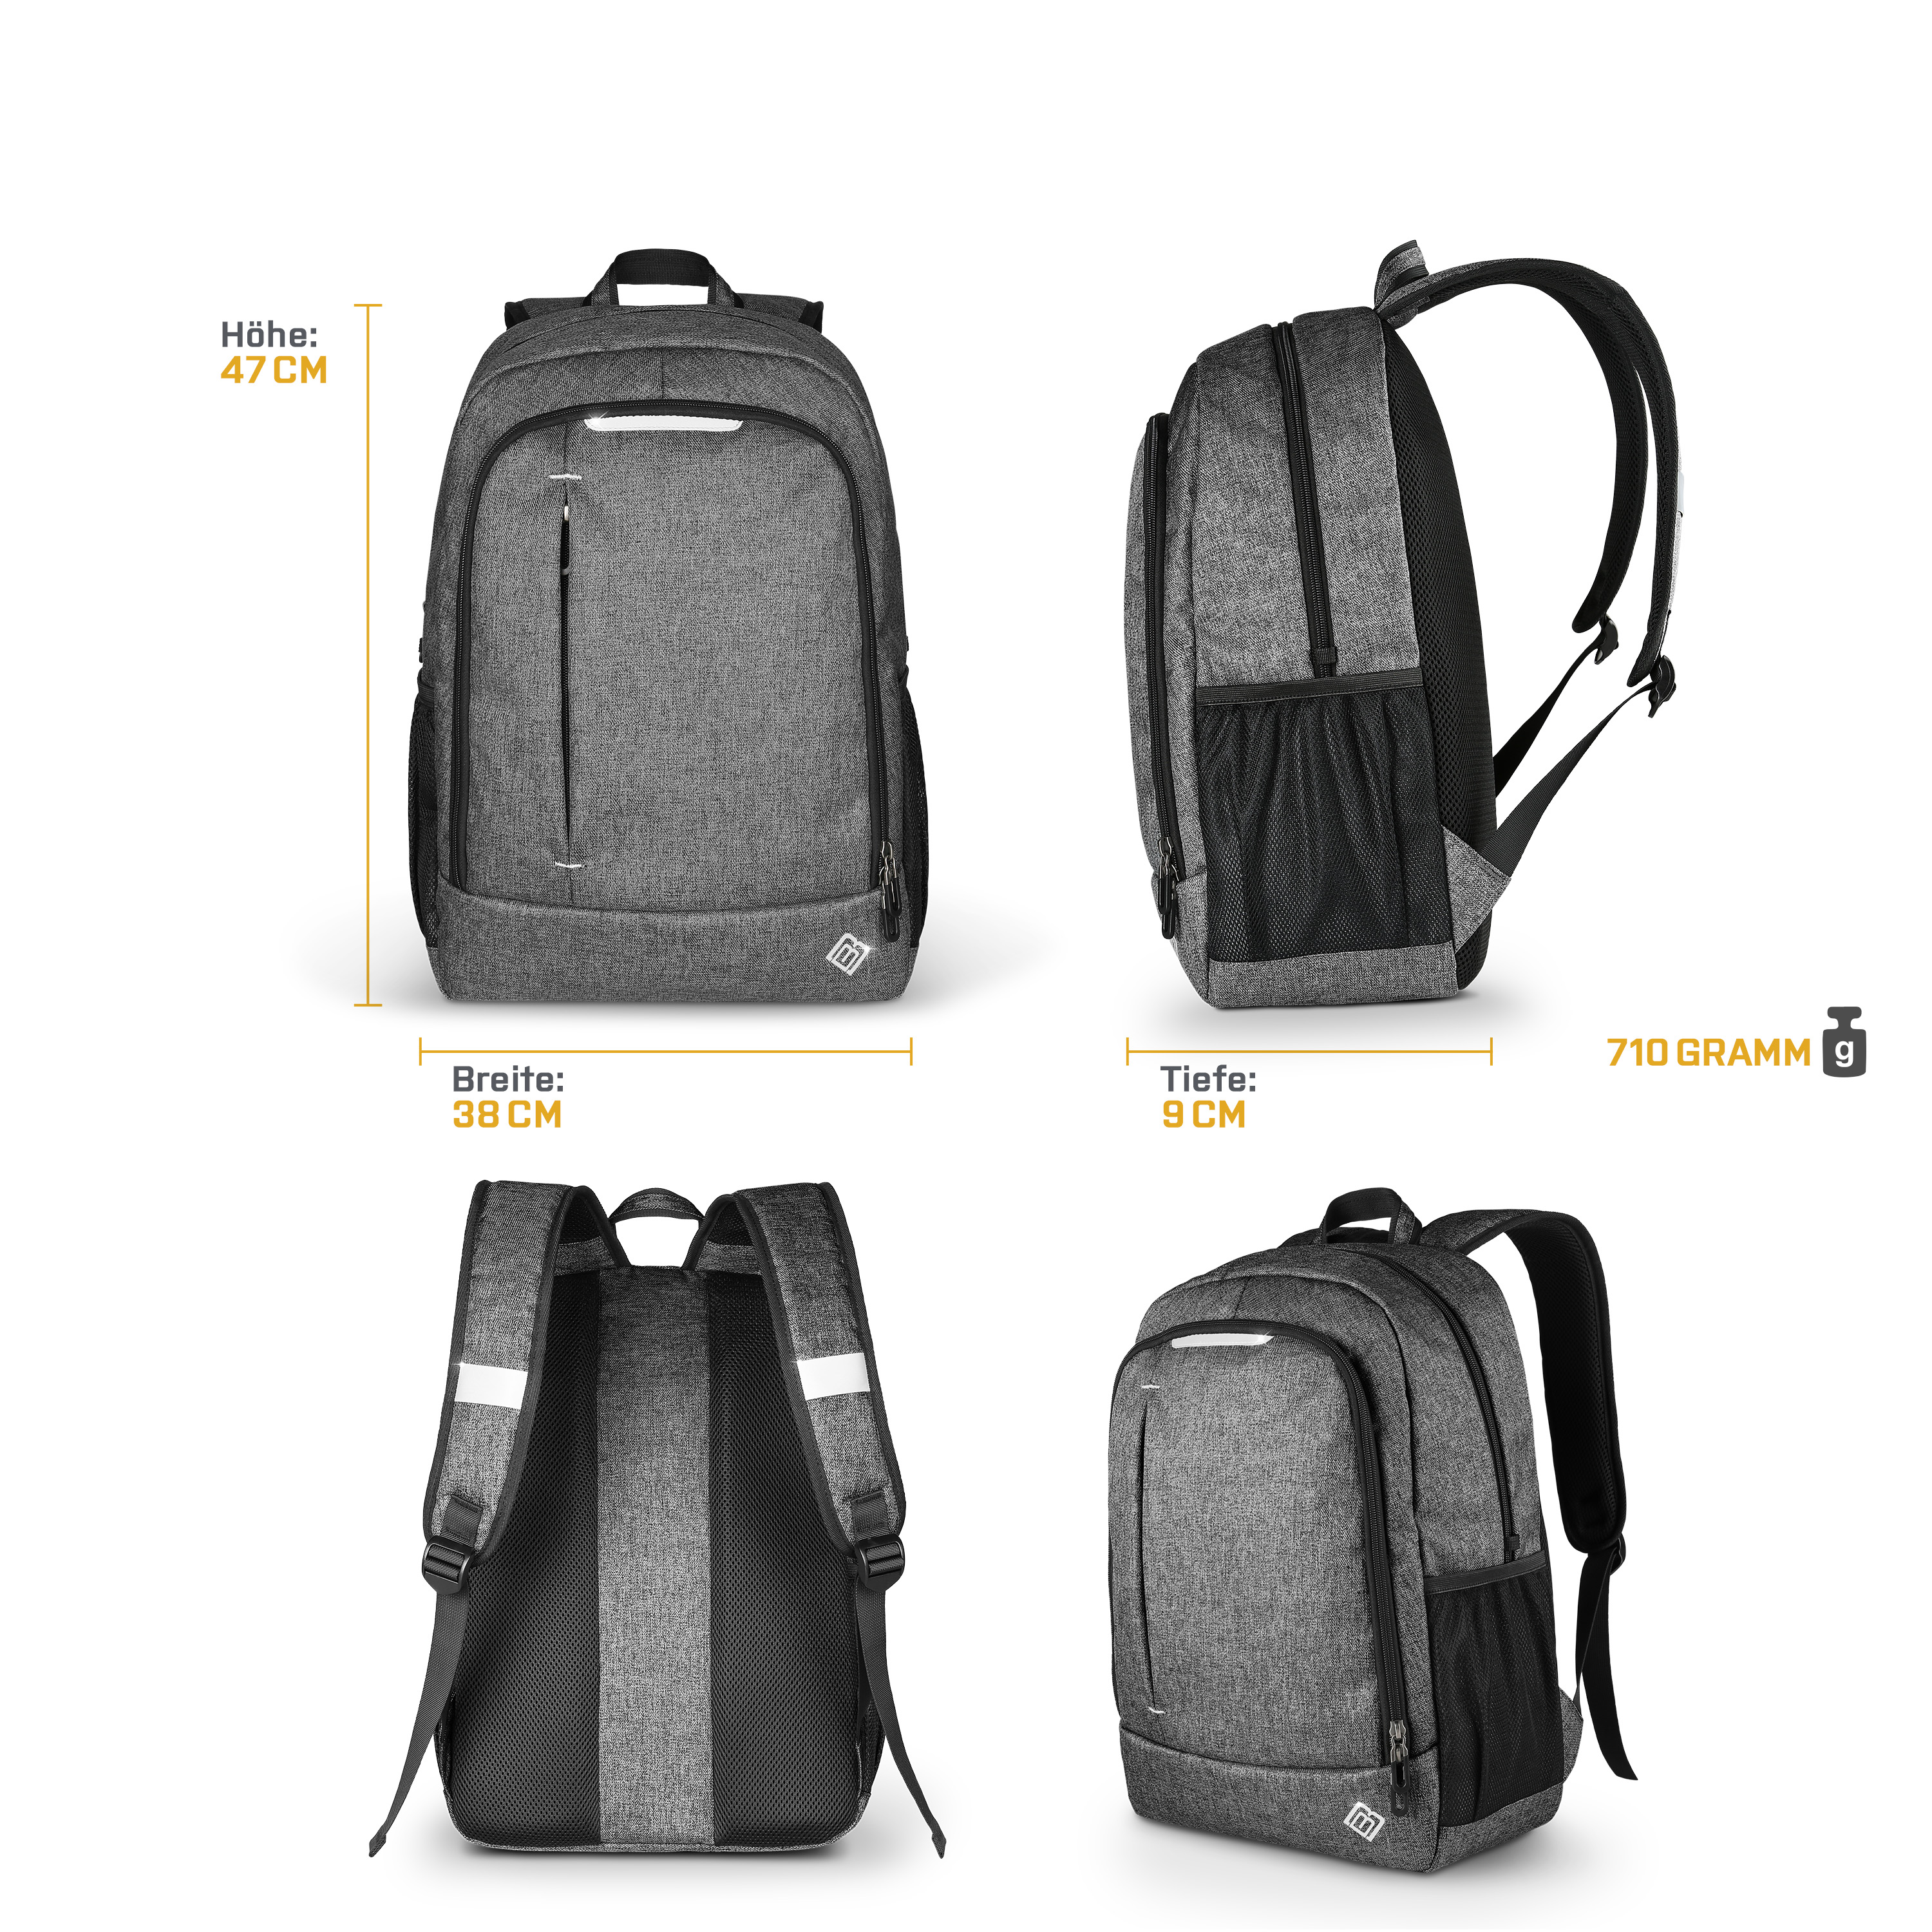 Textil/Stoff, BoostBag One grau BOOSTBOXX Rucksack grau Notebook-Rucksack Universal für